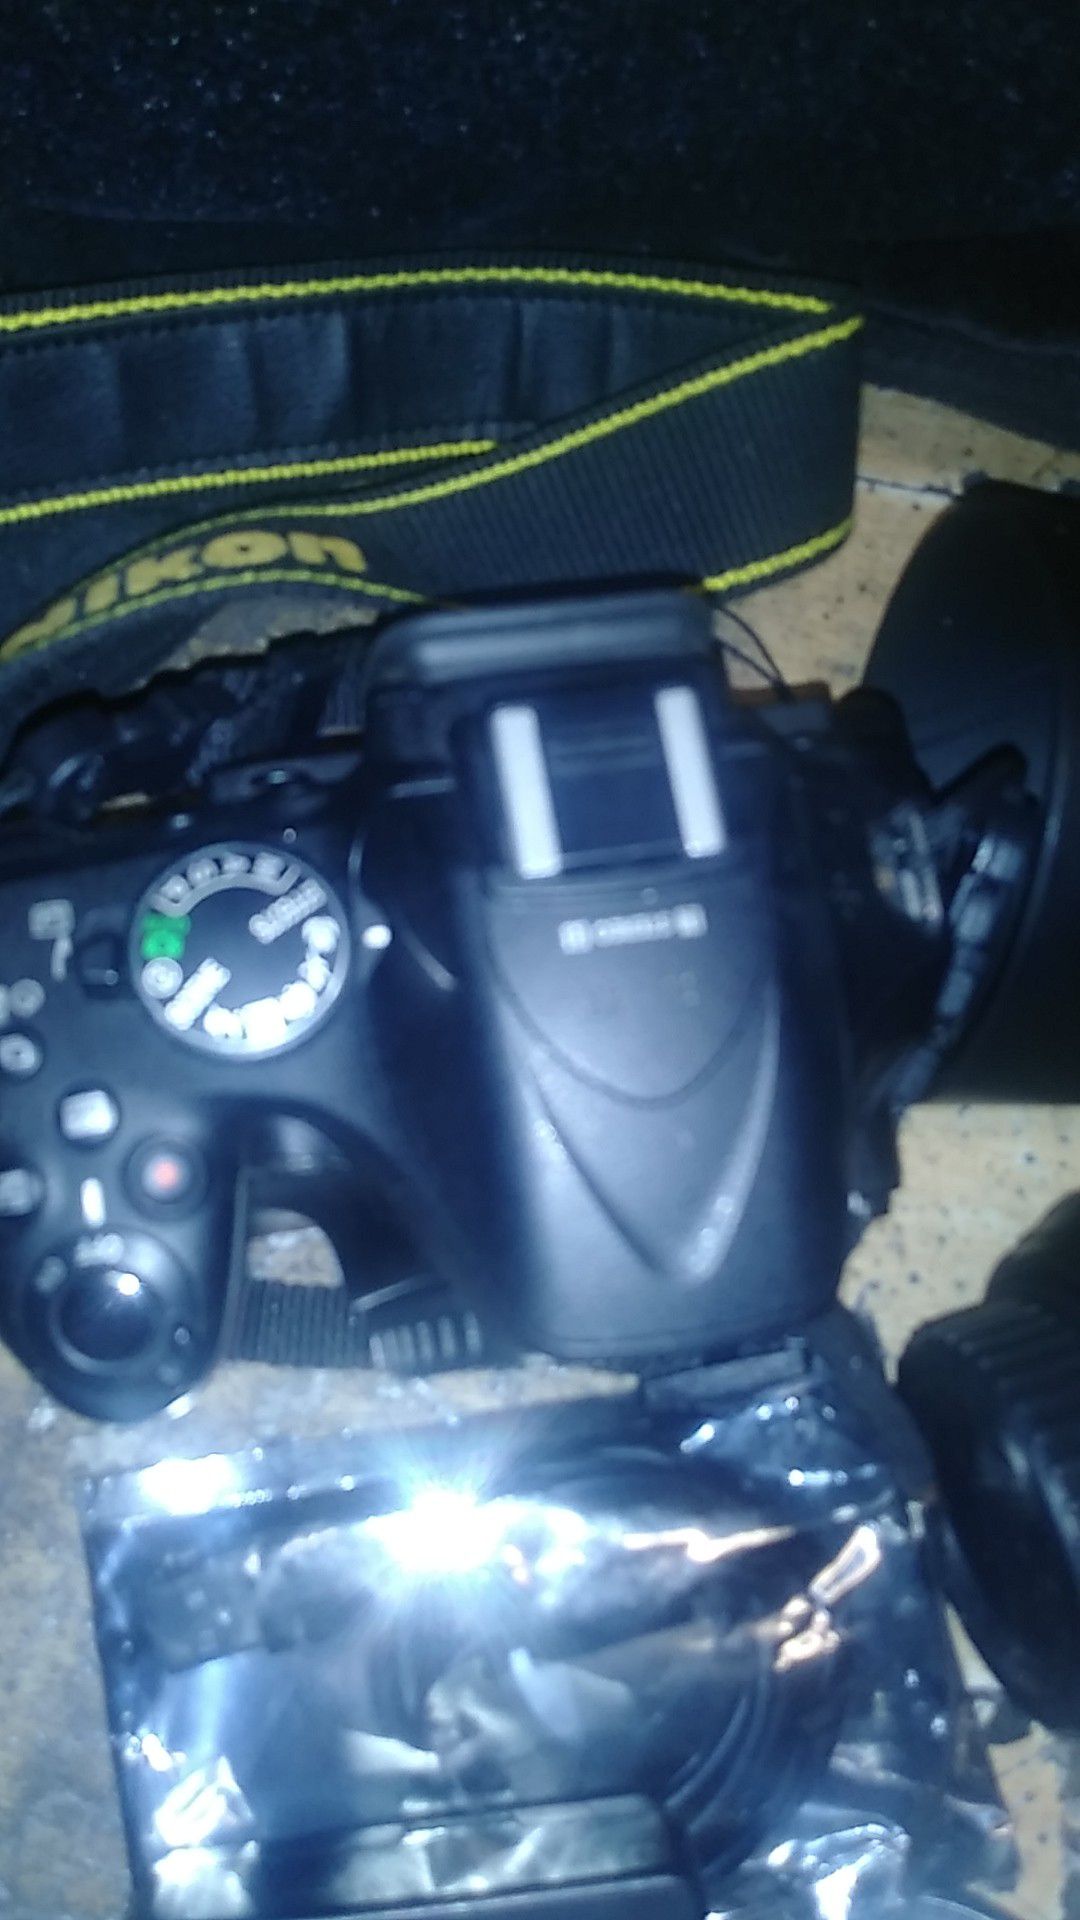 Nakia D 5200 camera